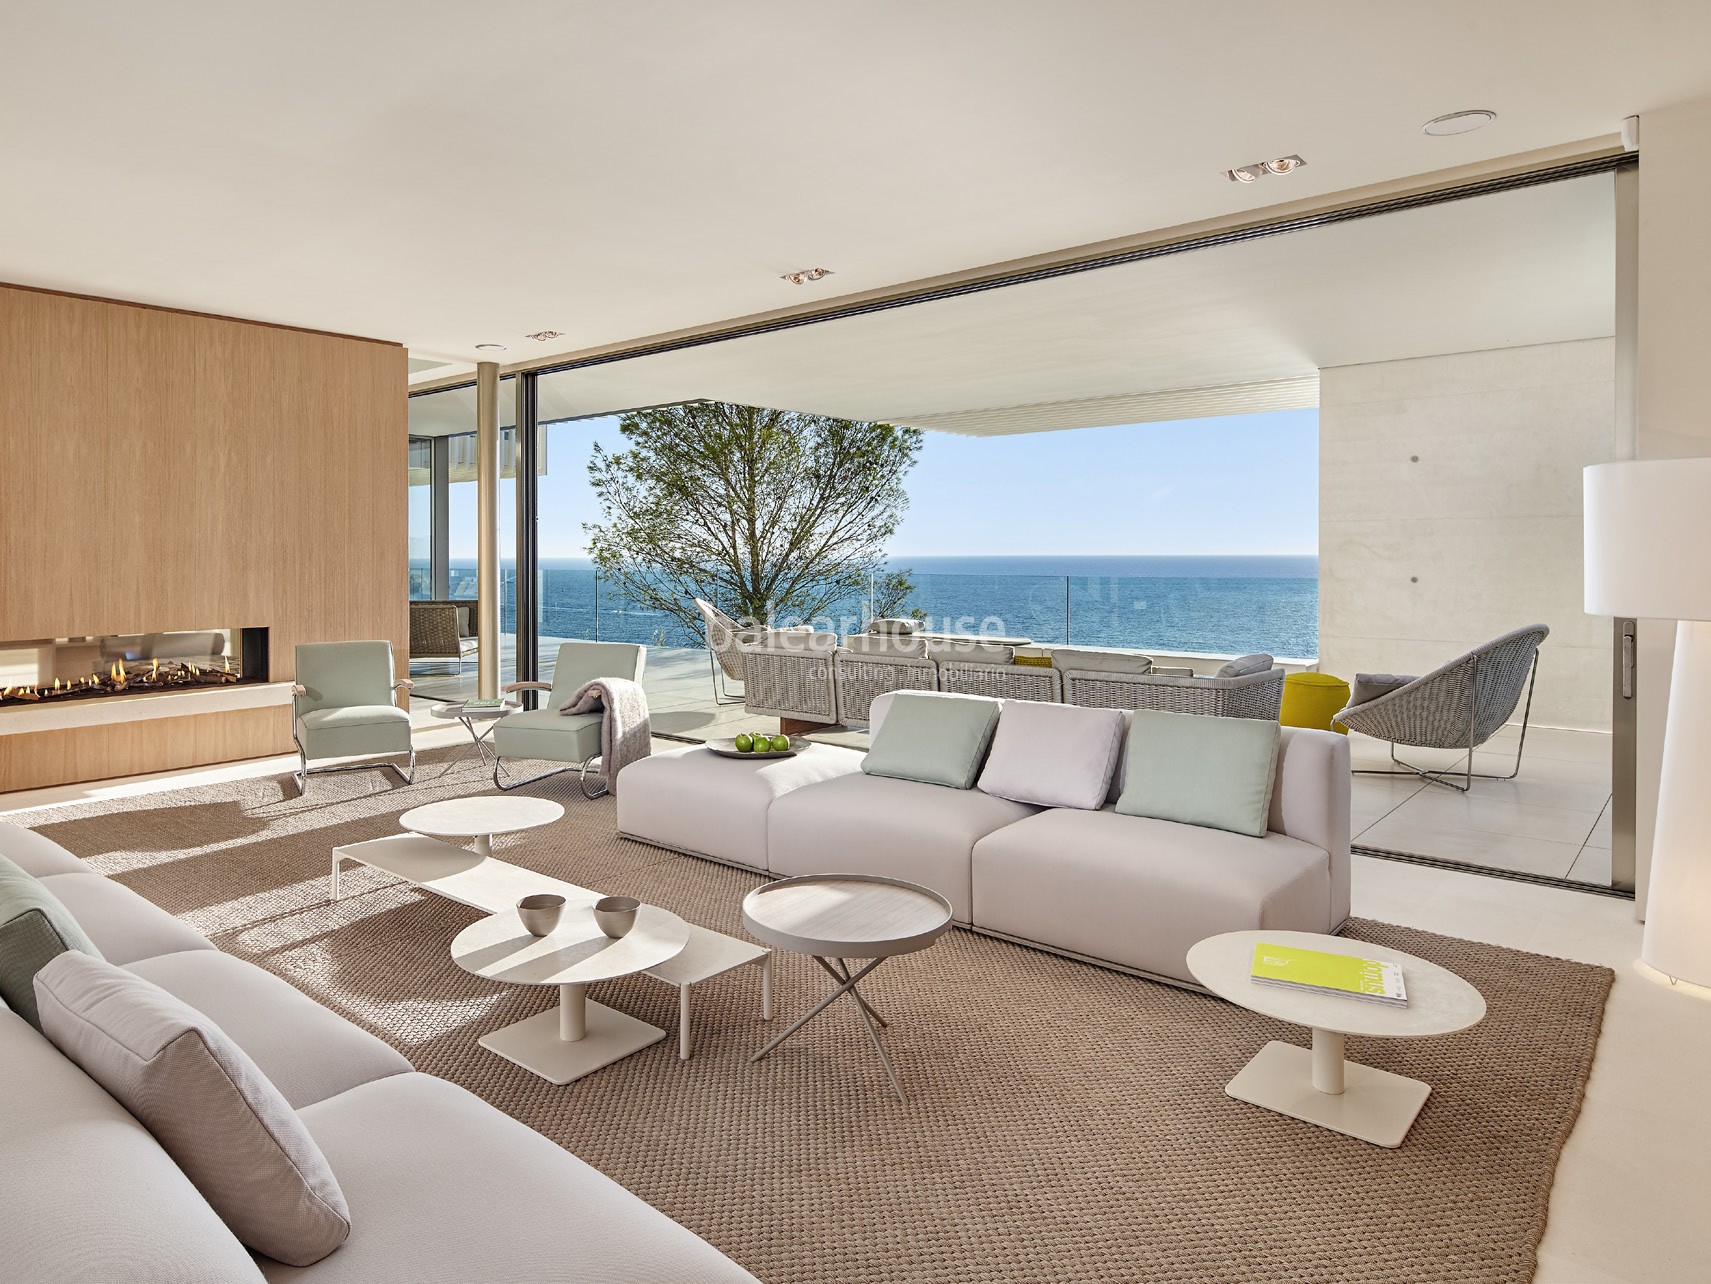 EXCLUSIVA. Espectacular villa frente al mar en Port Adriano; lujo y diseño en su máximo nivel.